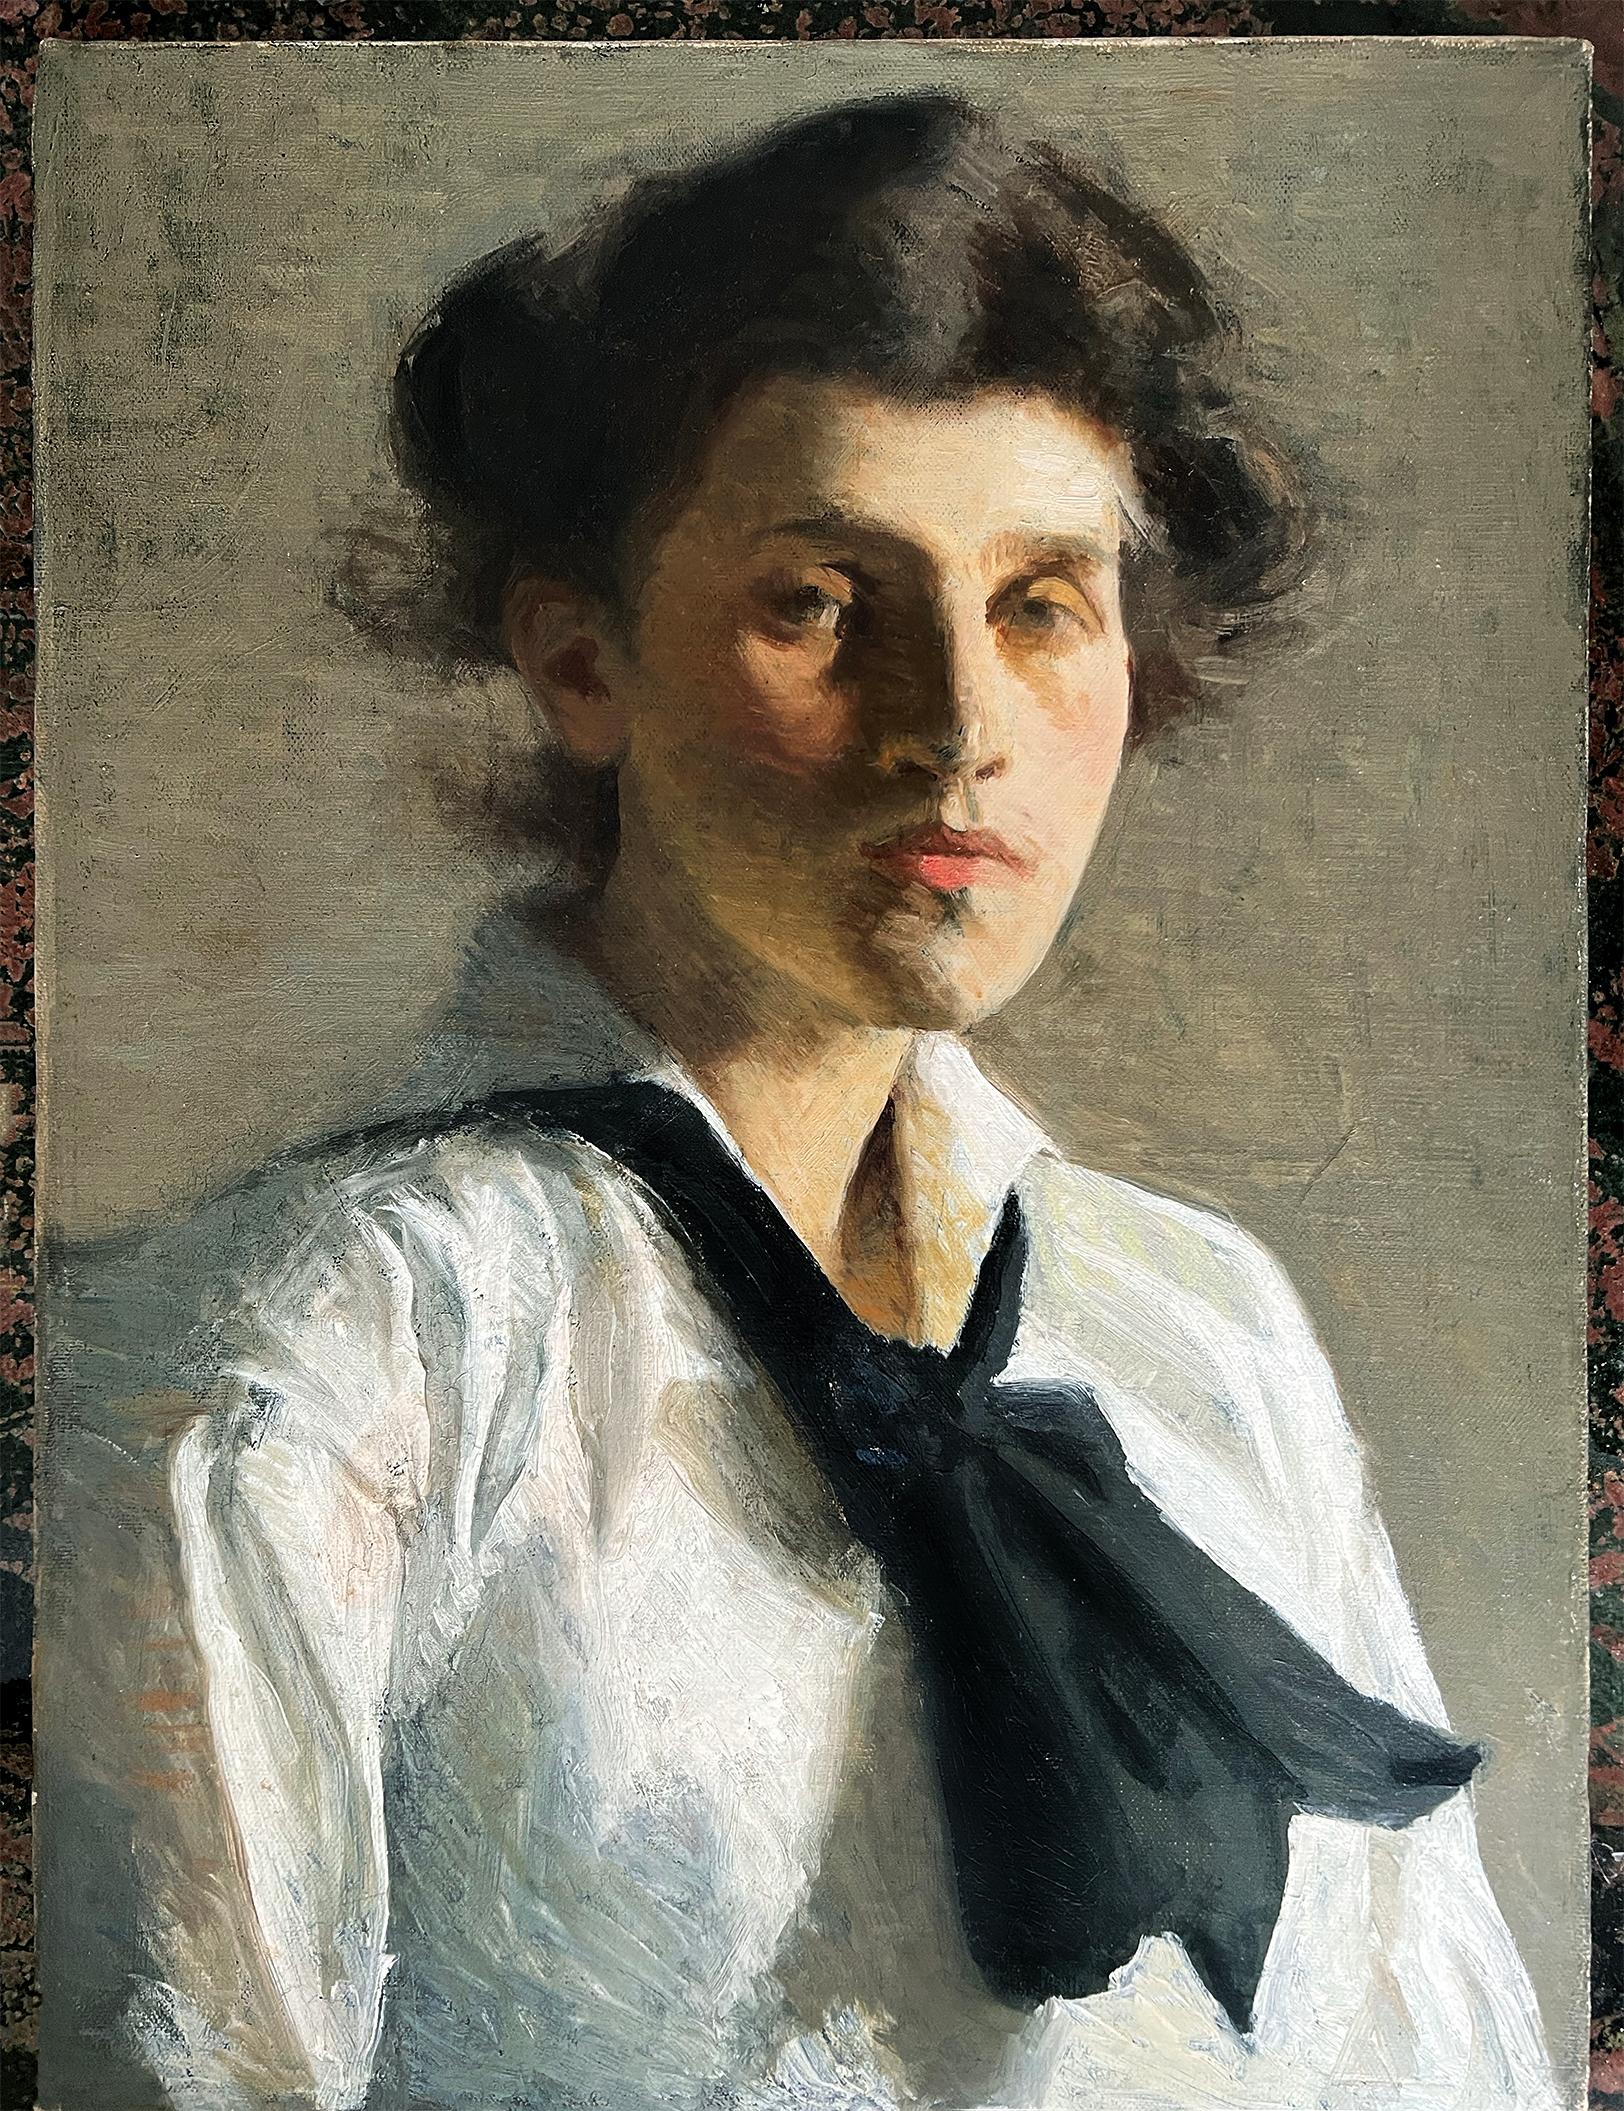 Porträt einer jungen Frau, amerikanischer Impressionist  – Painting von Will Rowland Davis